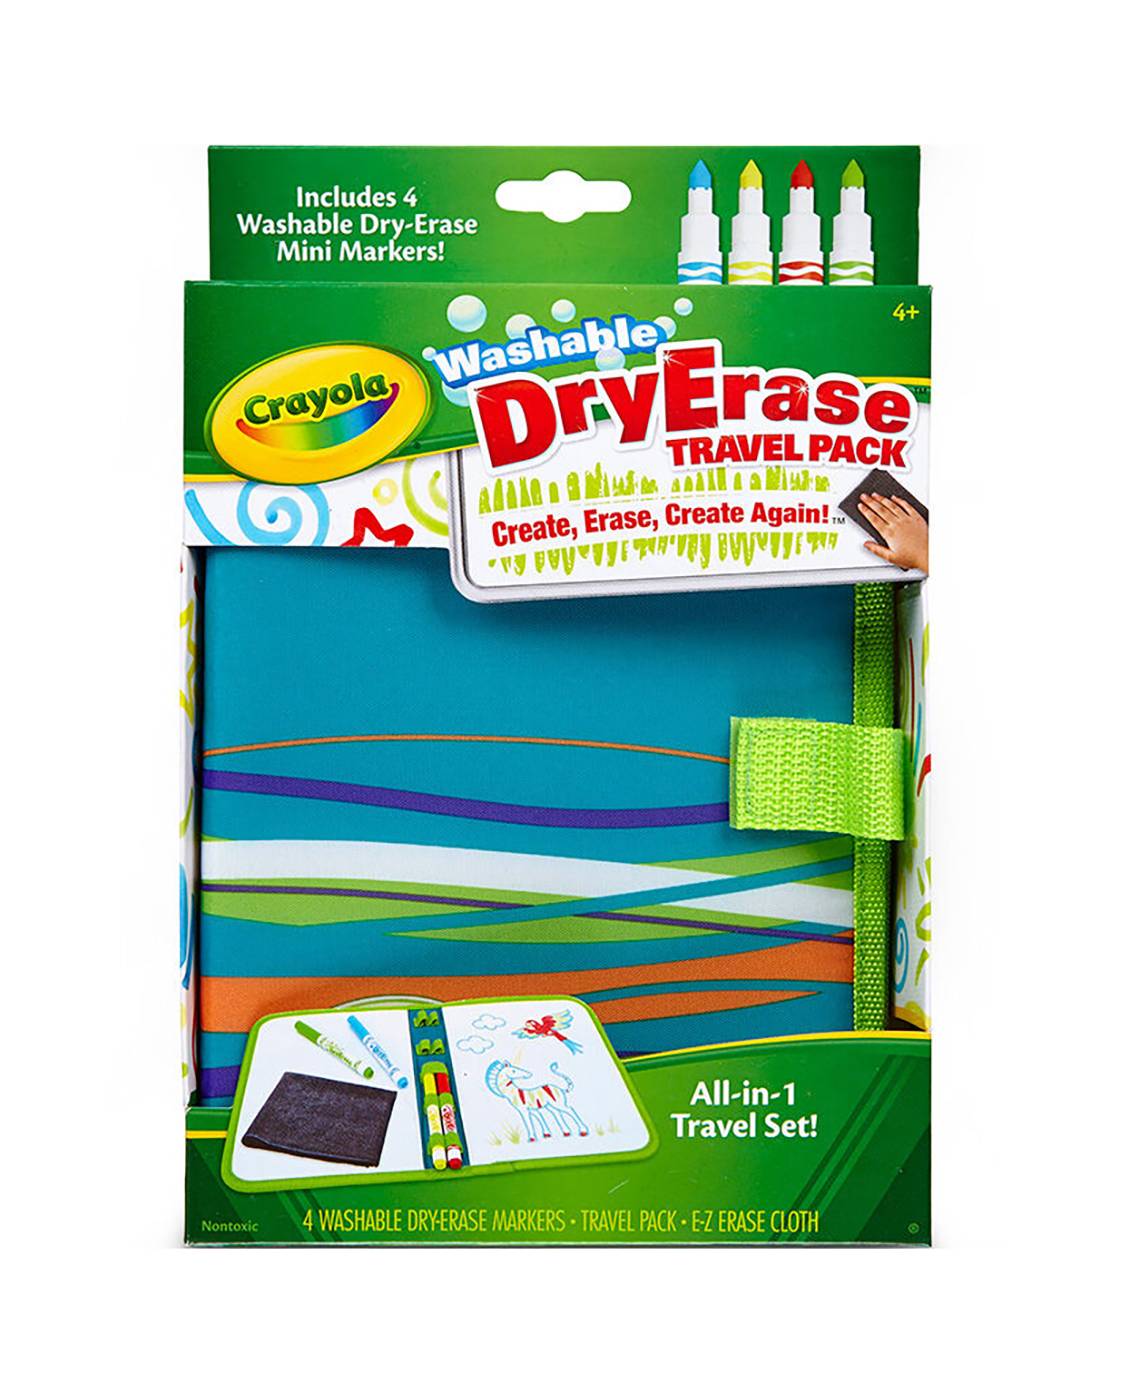 Crayola Washable Dry Erase Travel Pack; image 1 of 3